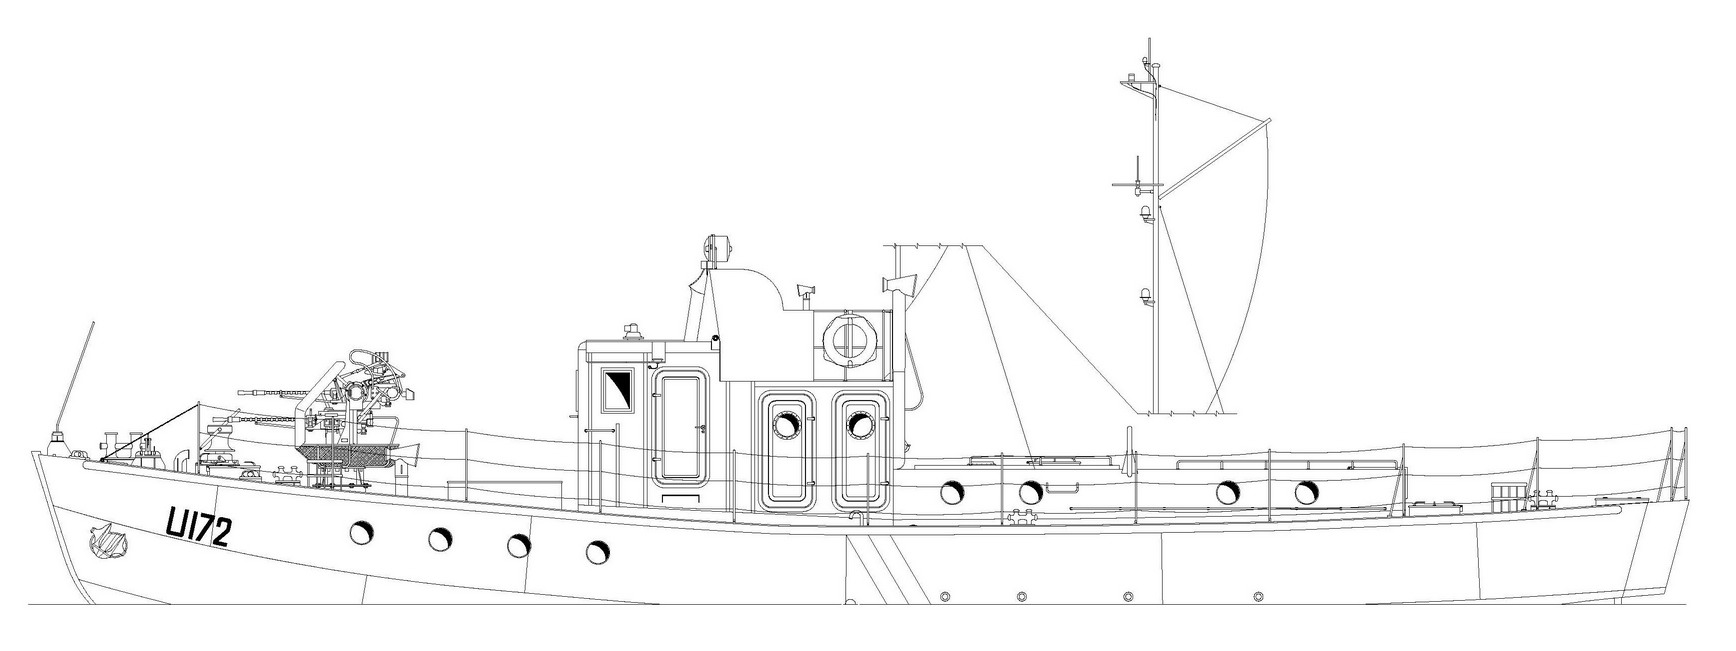 U-172.jpg